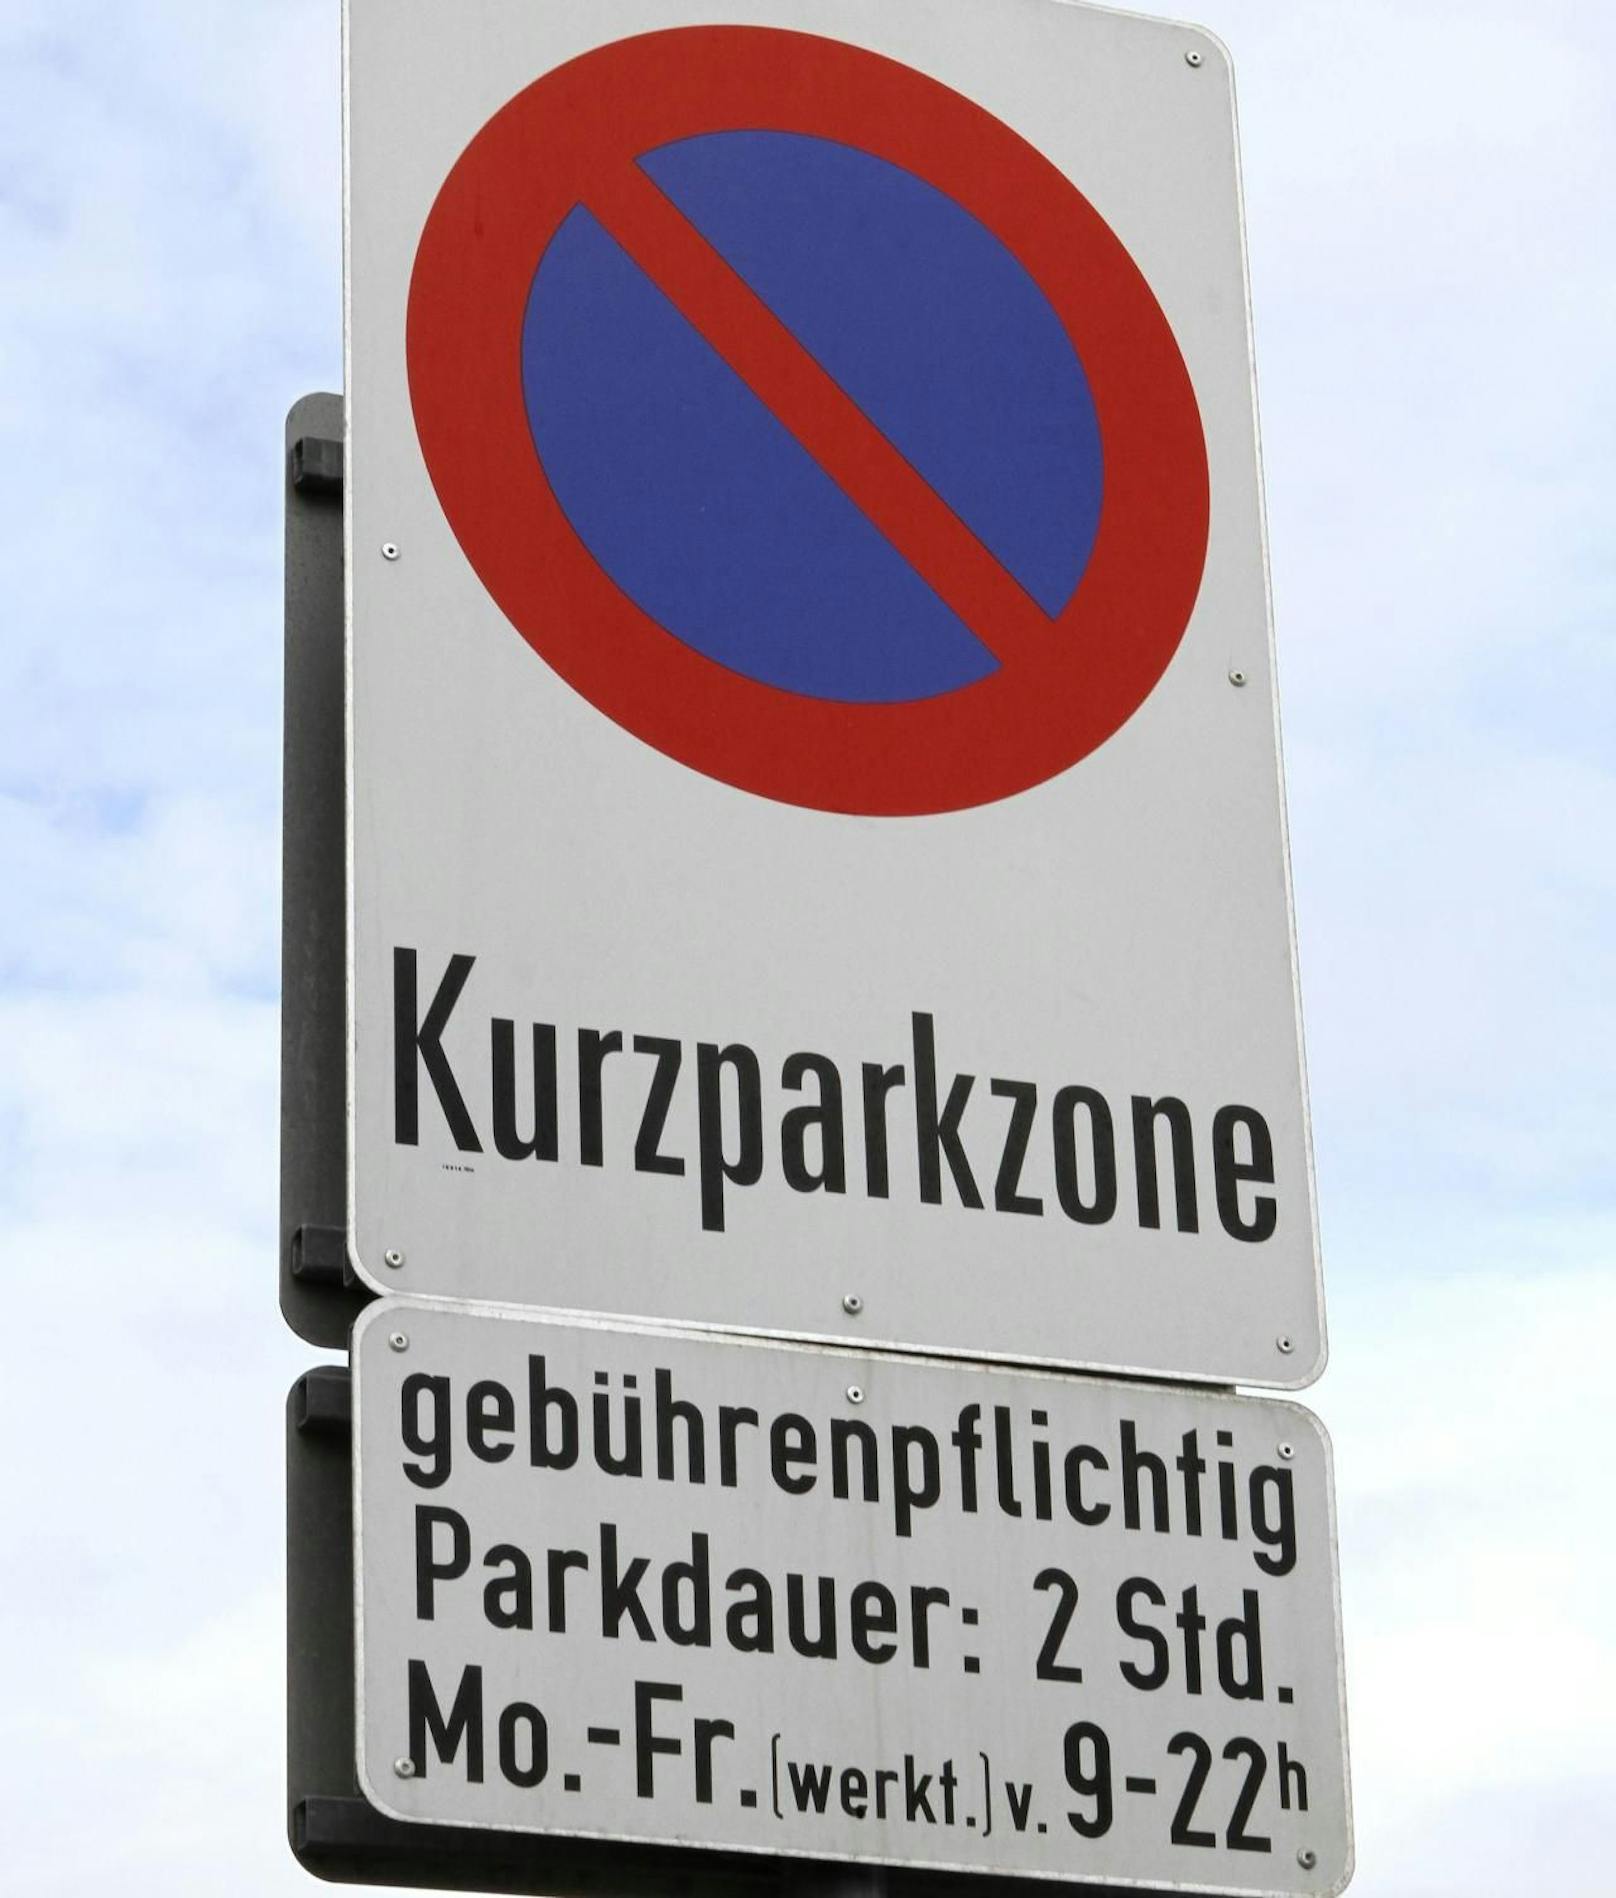 Am Montag treten die, wegen Corona ausgesetzten Kurzparkzonen in Wien wieder in Kraft. Ab dann sind auch wieder die Parksheriffs unterwegs. 